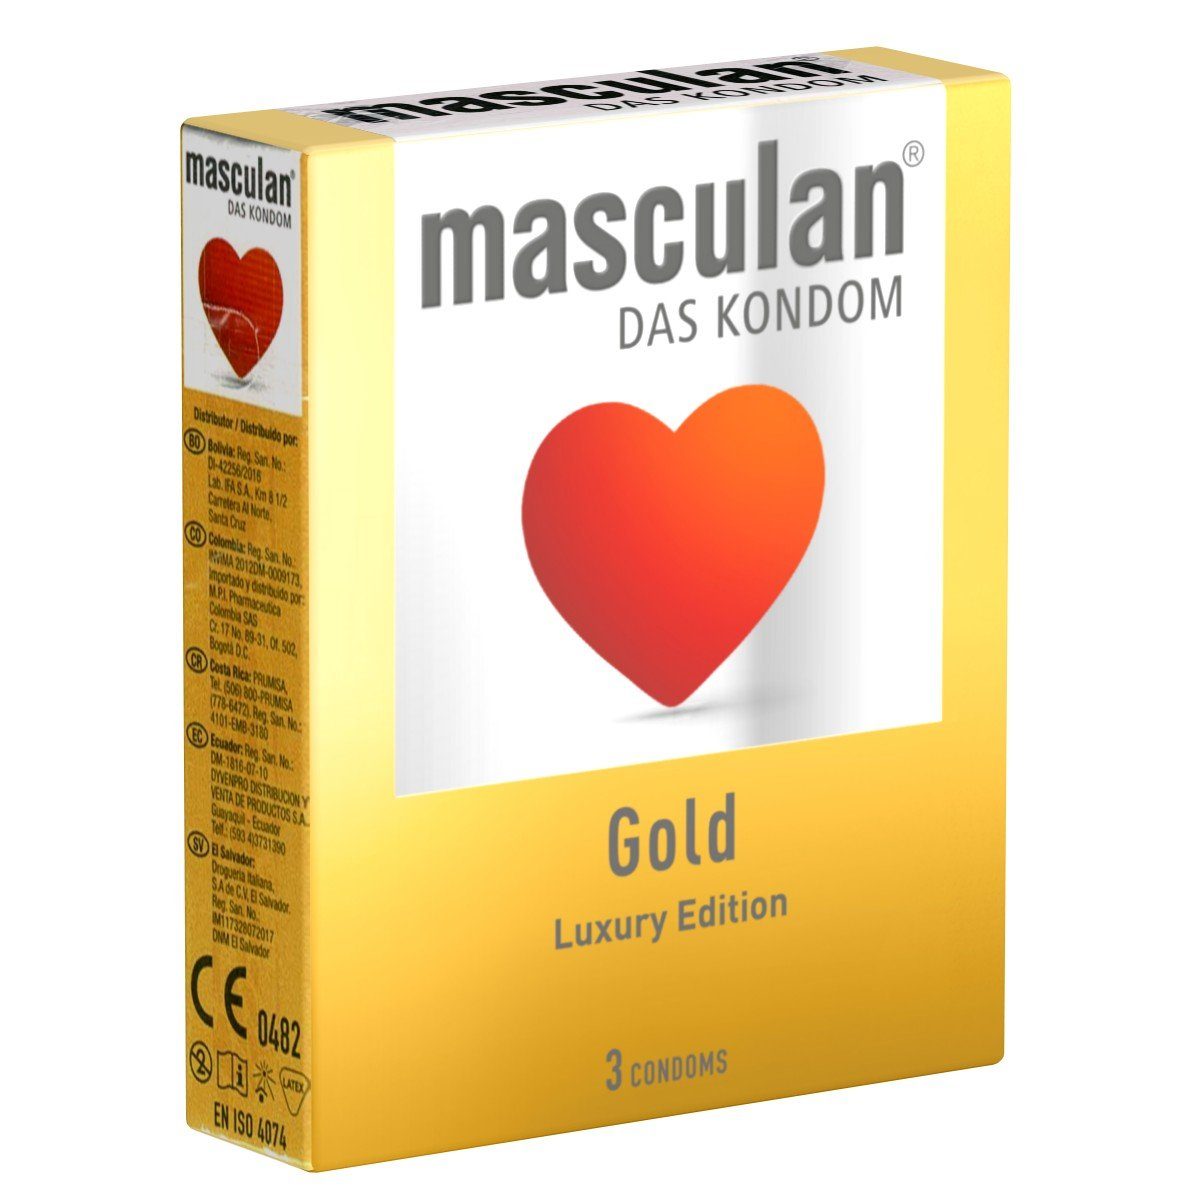 Masculan Kondome Gold Packung mit, 3 St., luxuriöse Qualitätskondome, goldfarbige Kondome mit zartem Vanilleduft